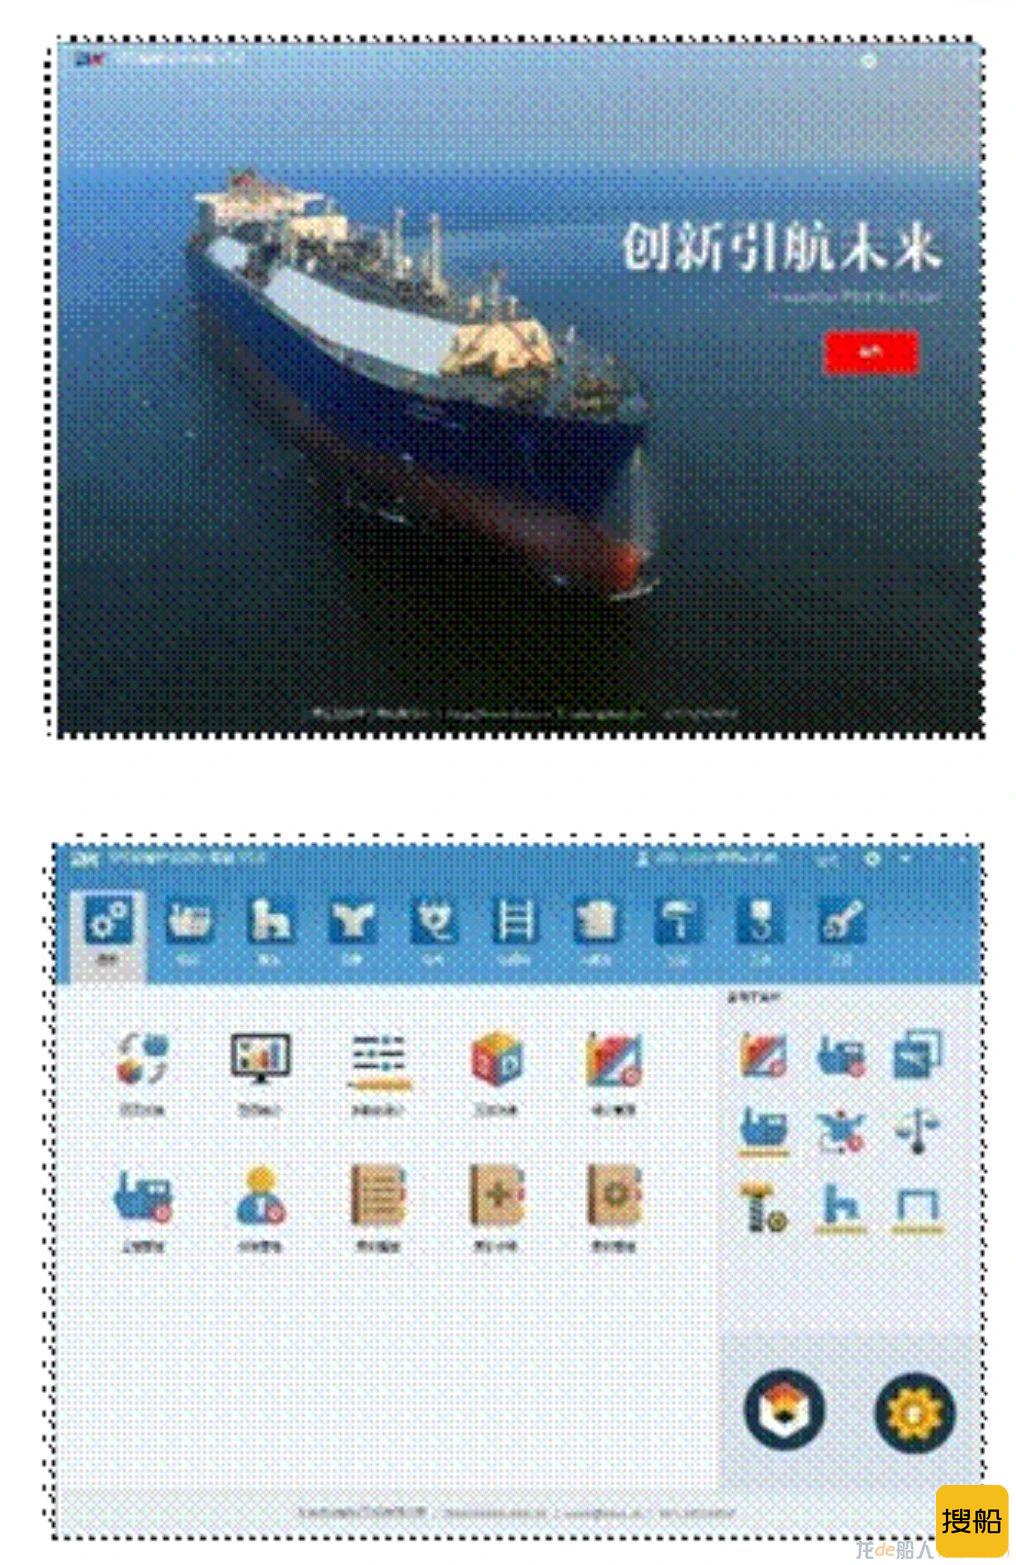 沪东中华船舶产品三维设计软件（SPD 5.0）入选《中央企业科技创新成果推荐目录》